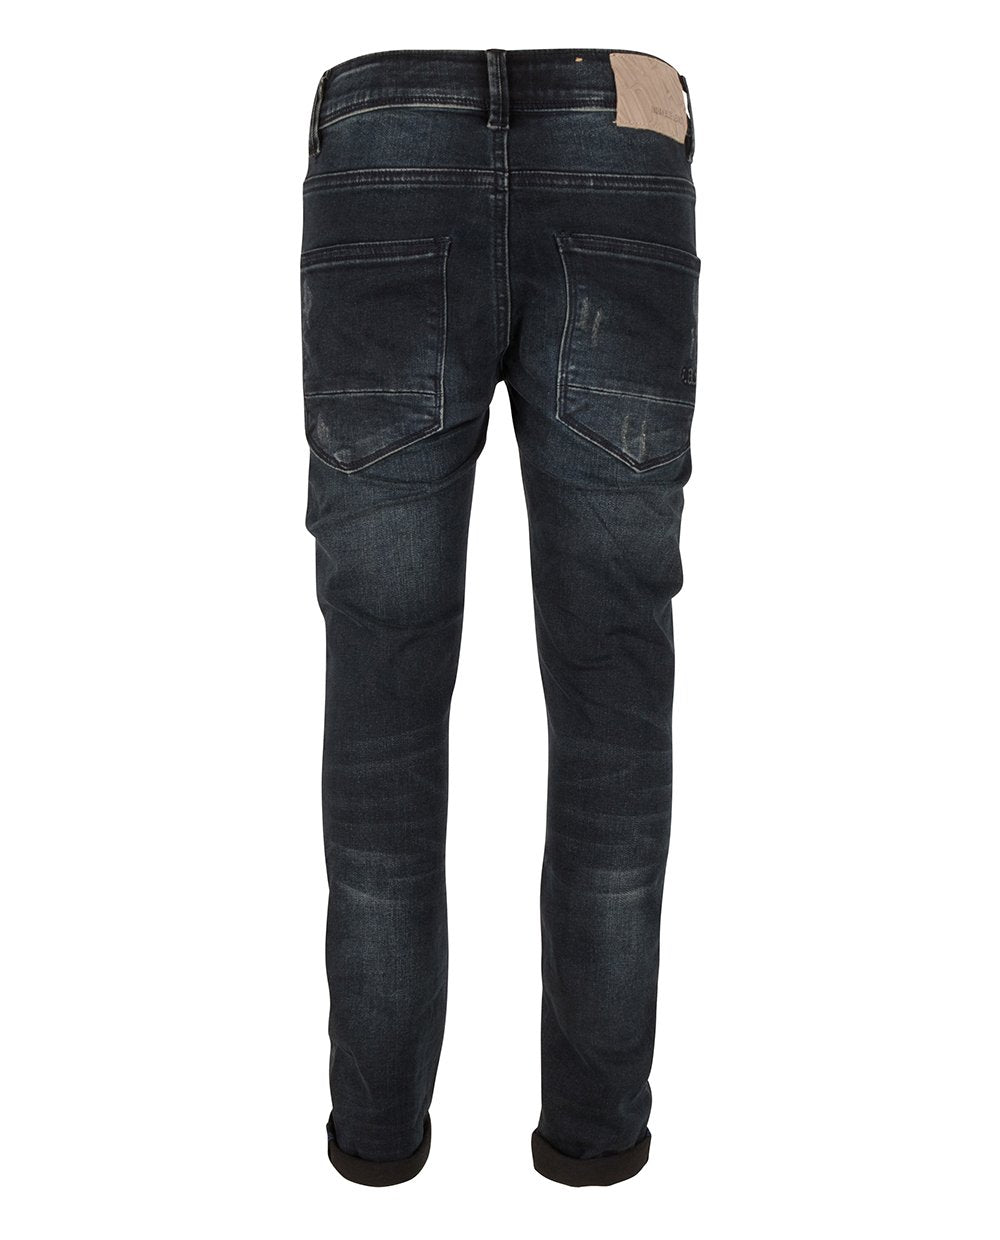 Jongens BLUE MAX SLIM FIT van Indian Blue Jeans in de kleur Dark Denim in maat 176.